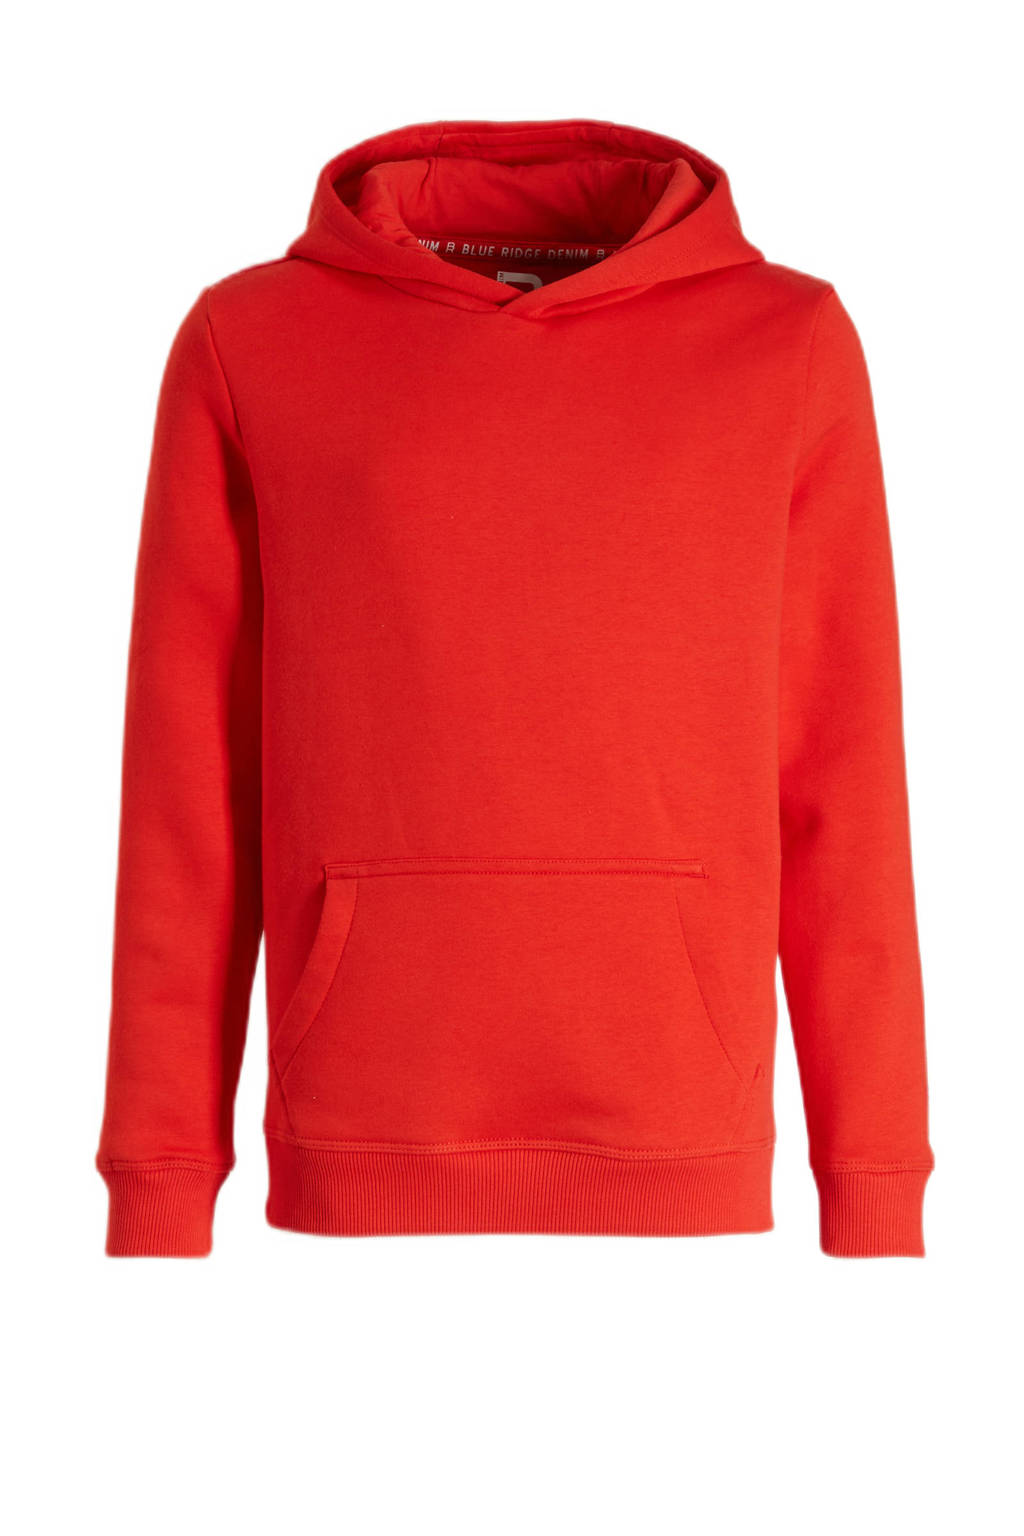 landinwaarts Bier Sympton WE Fashion Unisex hoodie rood | wehkamp